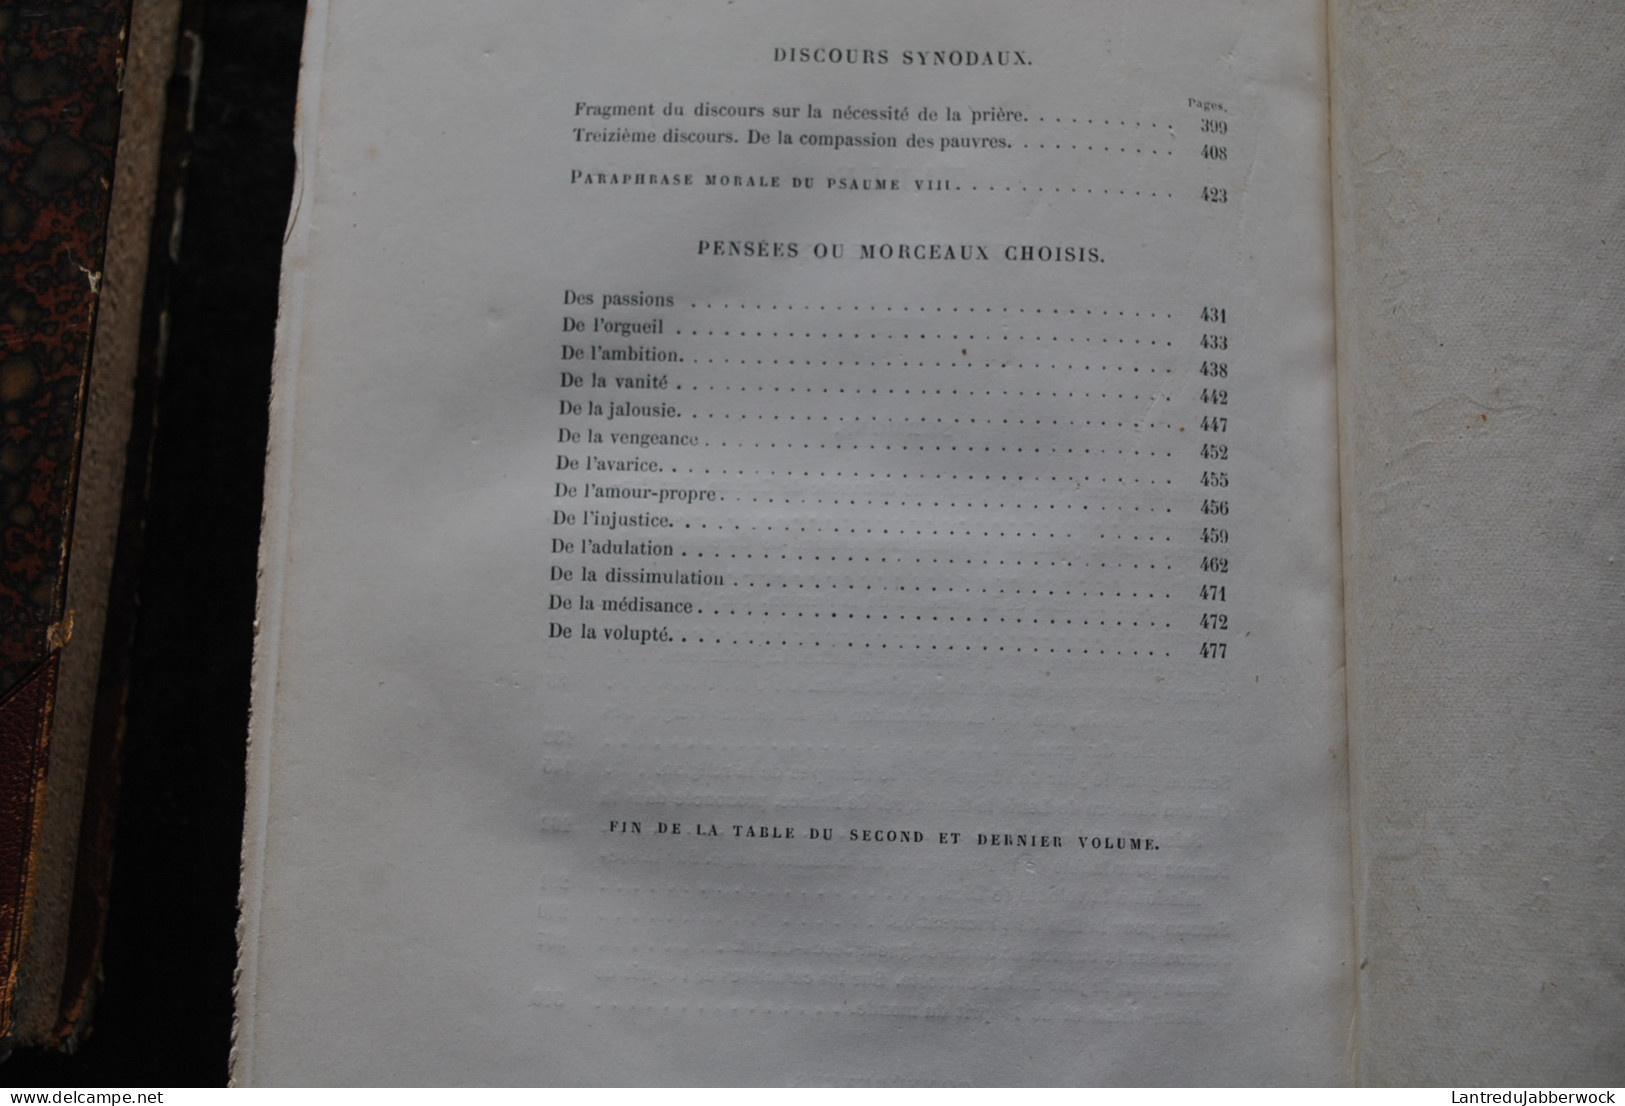 Oeuvres choisies de MASSILLON Précédée d'une étude par Frédéric Godefroy 2 TOMES 1868 Reliures dos et coins en cuir